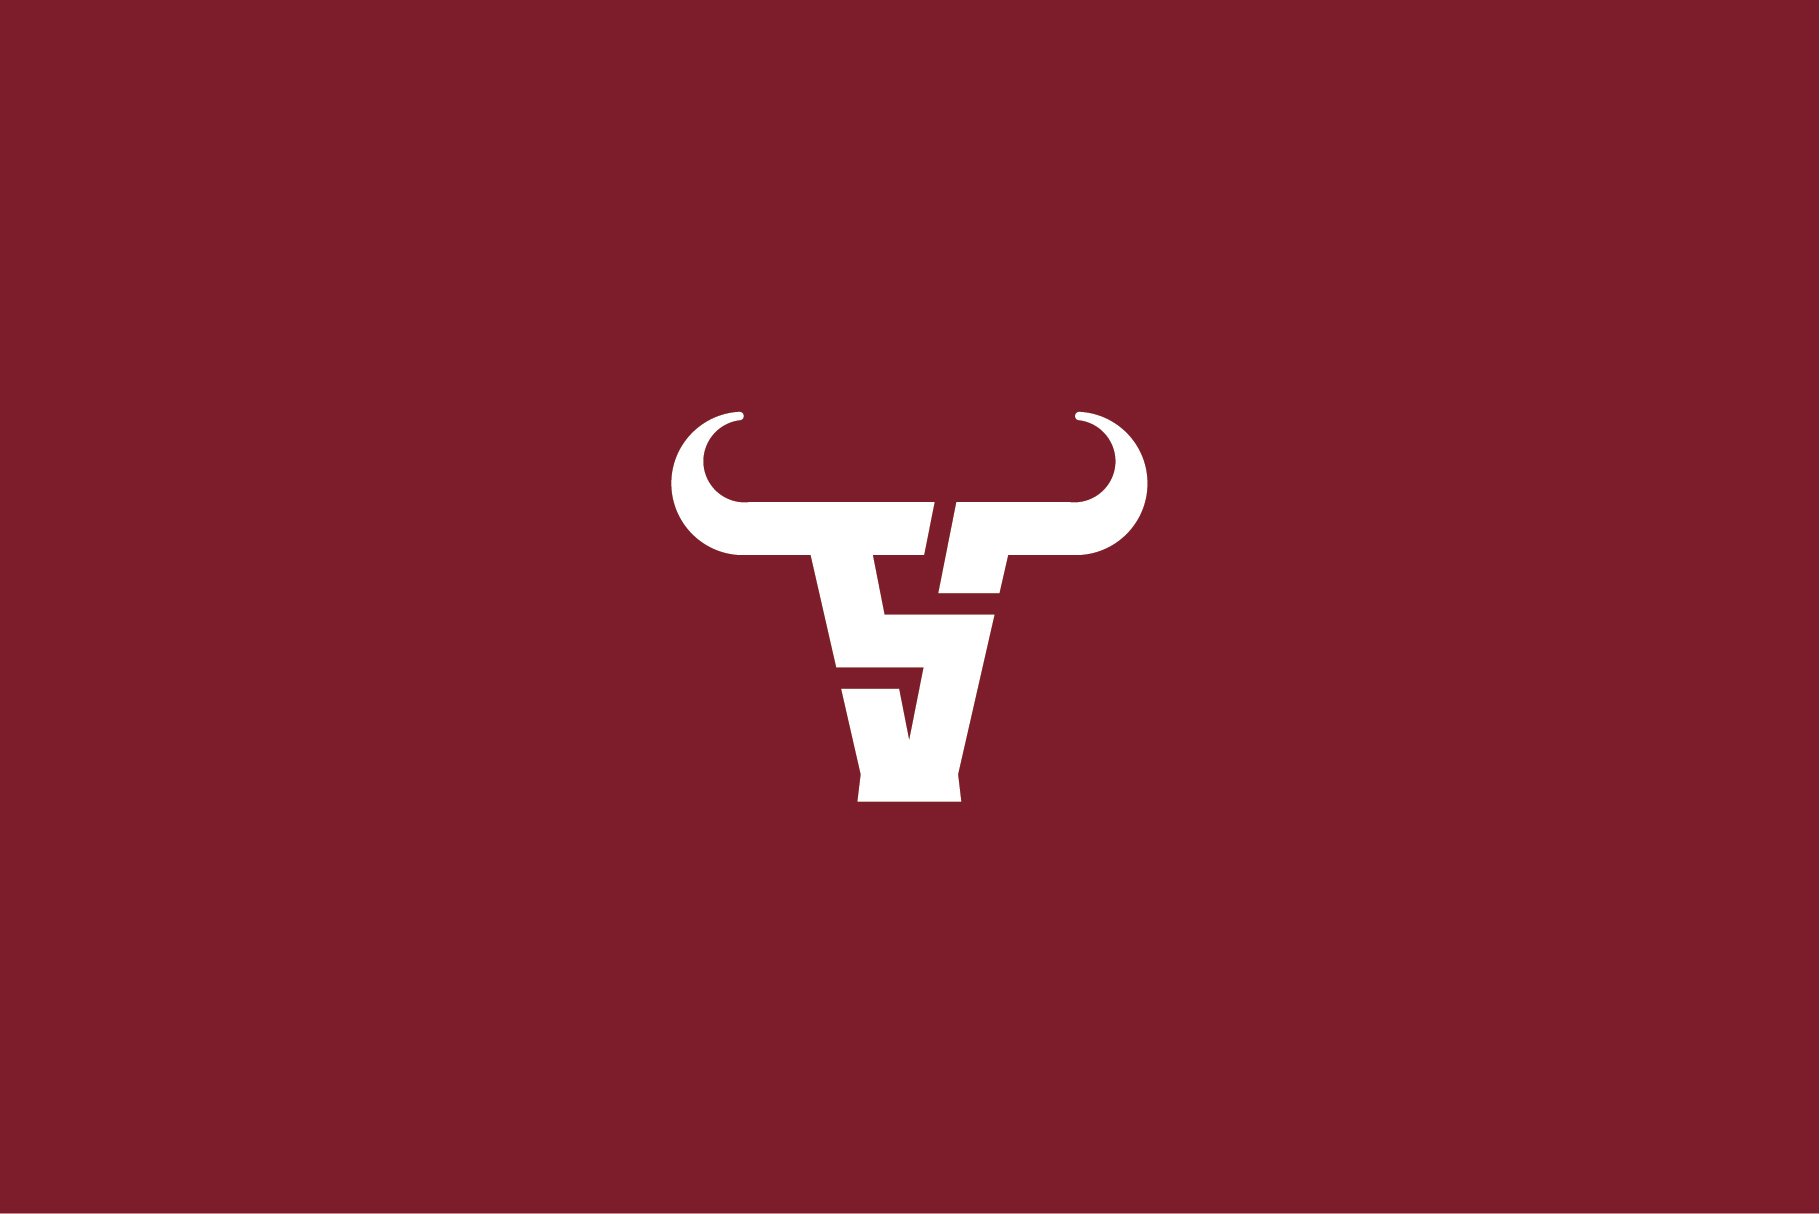 Bull Logo cover image.